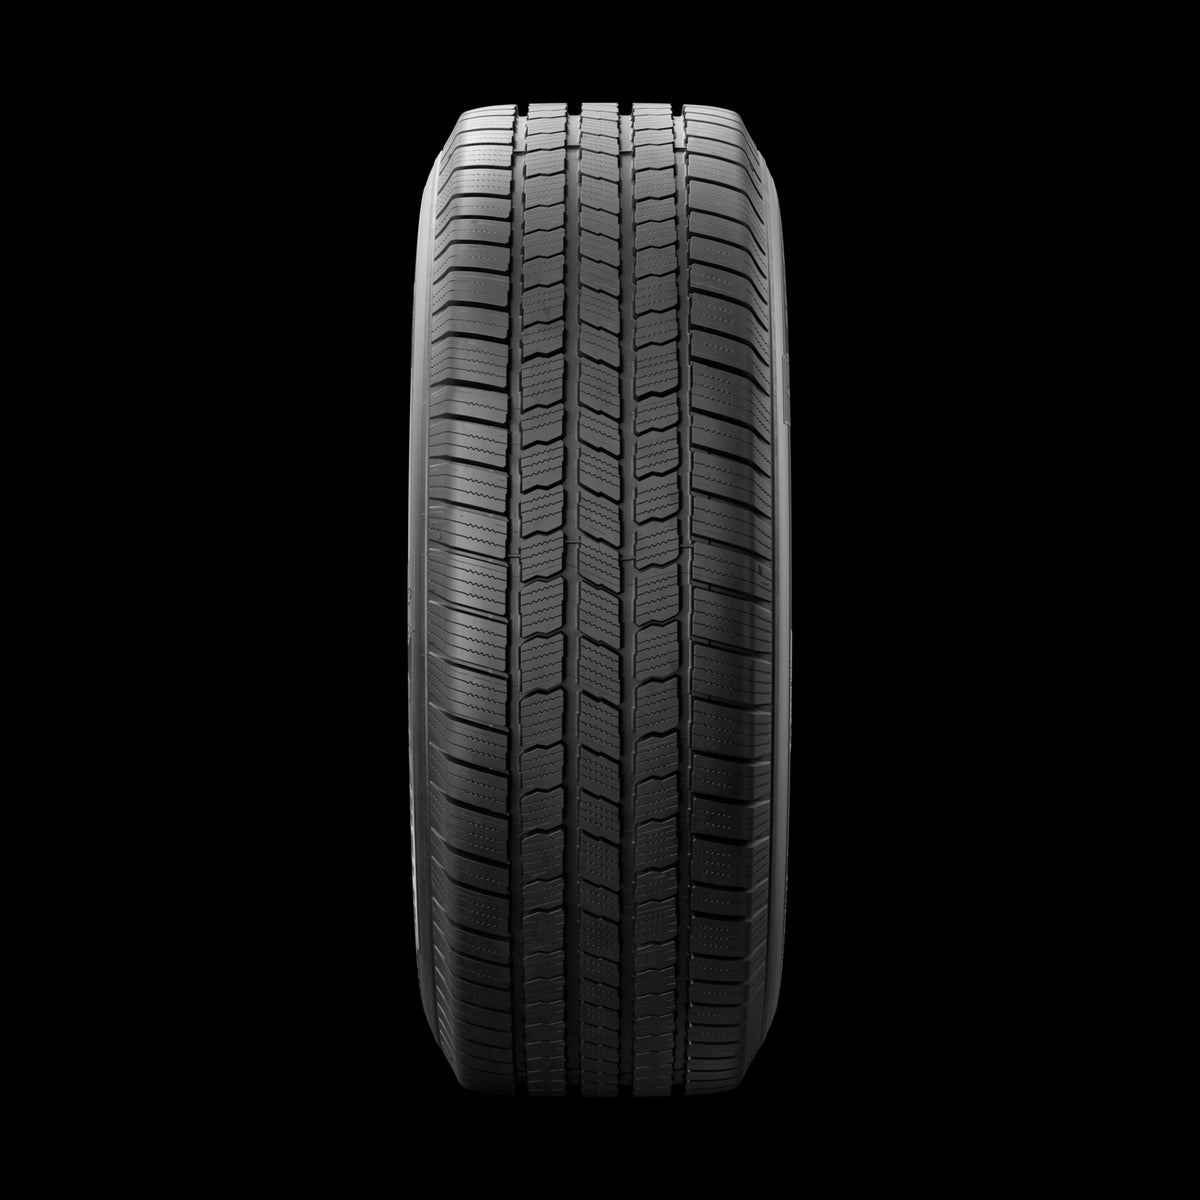 36986 275/65R18 Michelin Defender LTX M/S 116T Michelin Tires